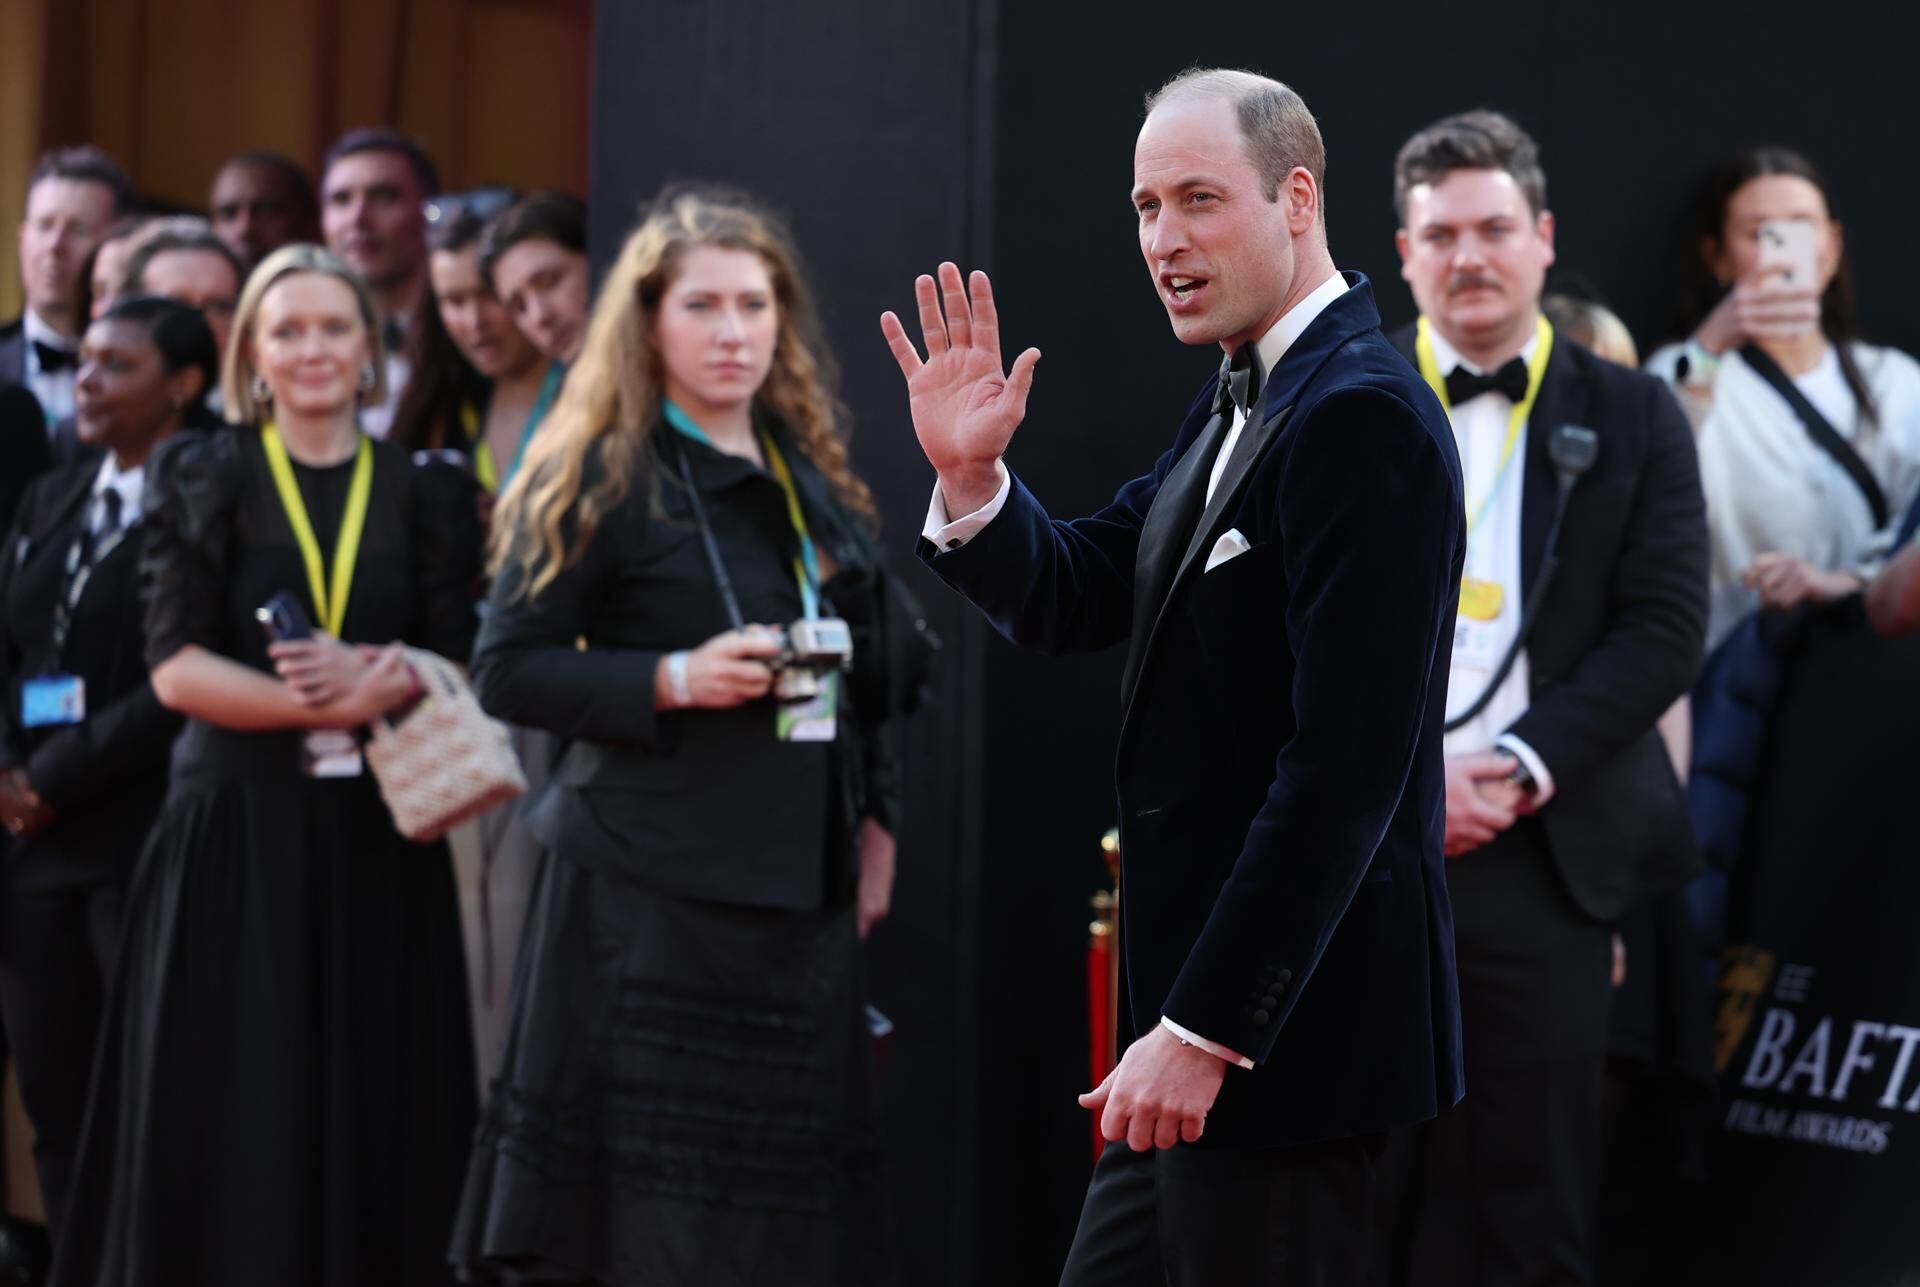 El príncipe Guillermo es el esposo de Kate Middleton y es el primero en la línea de sucesión al trono británico. (Foto: EFE).